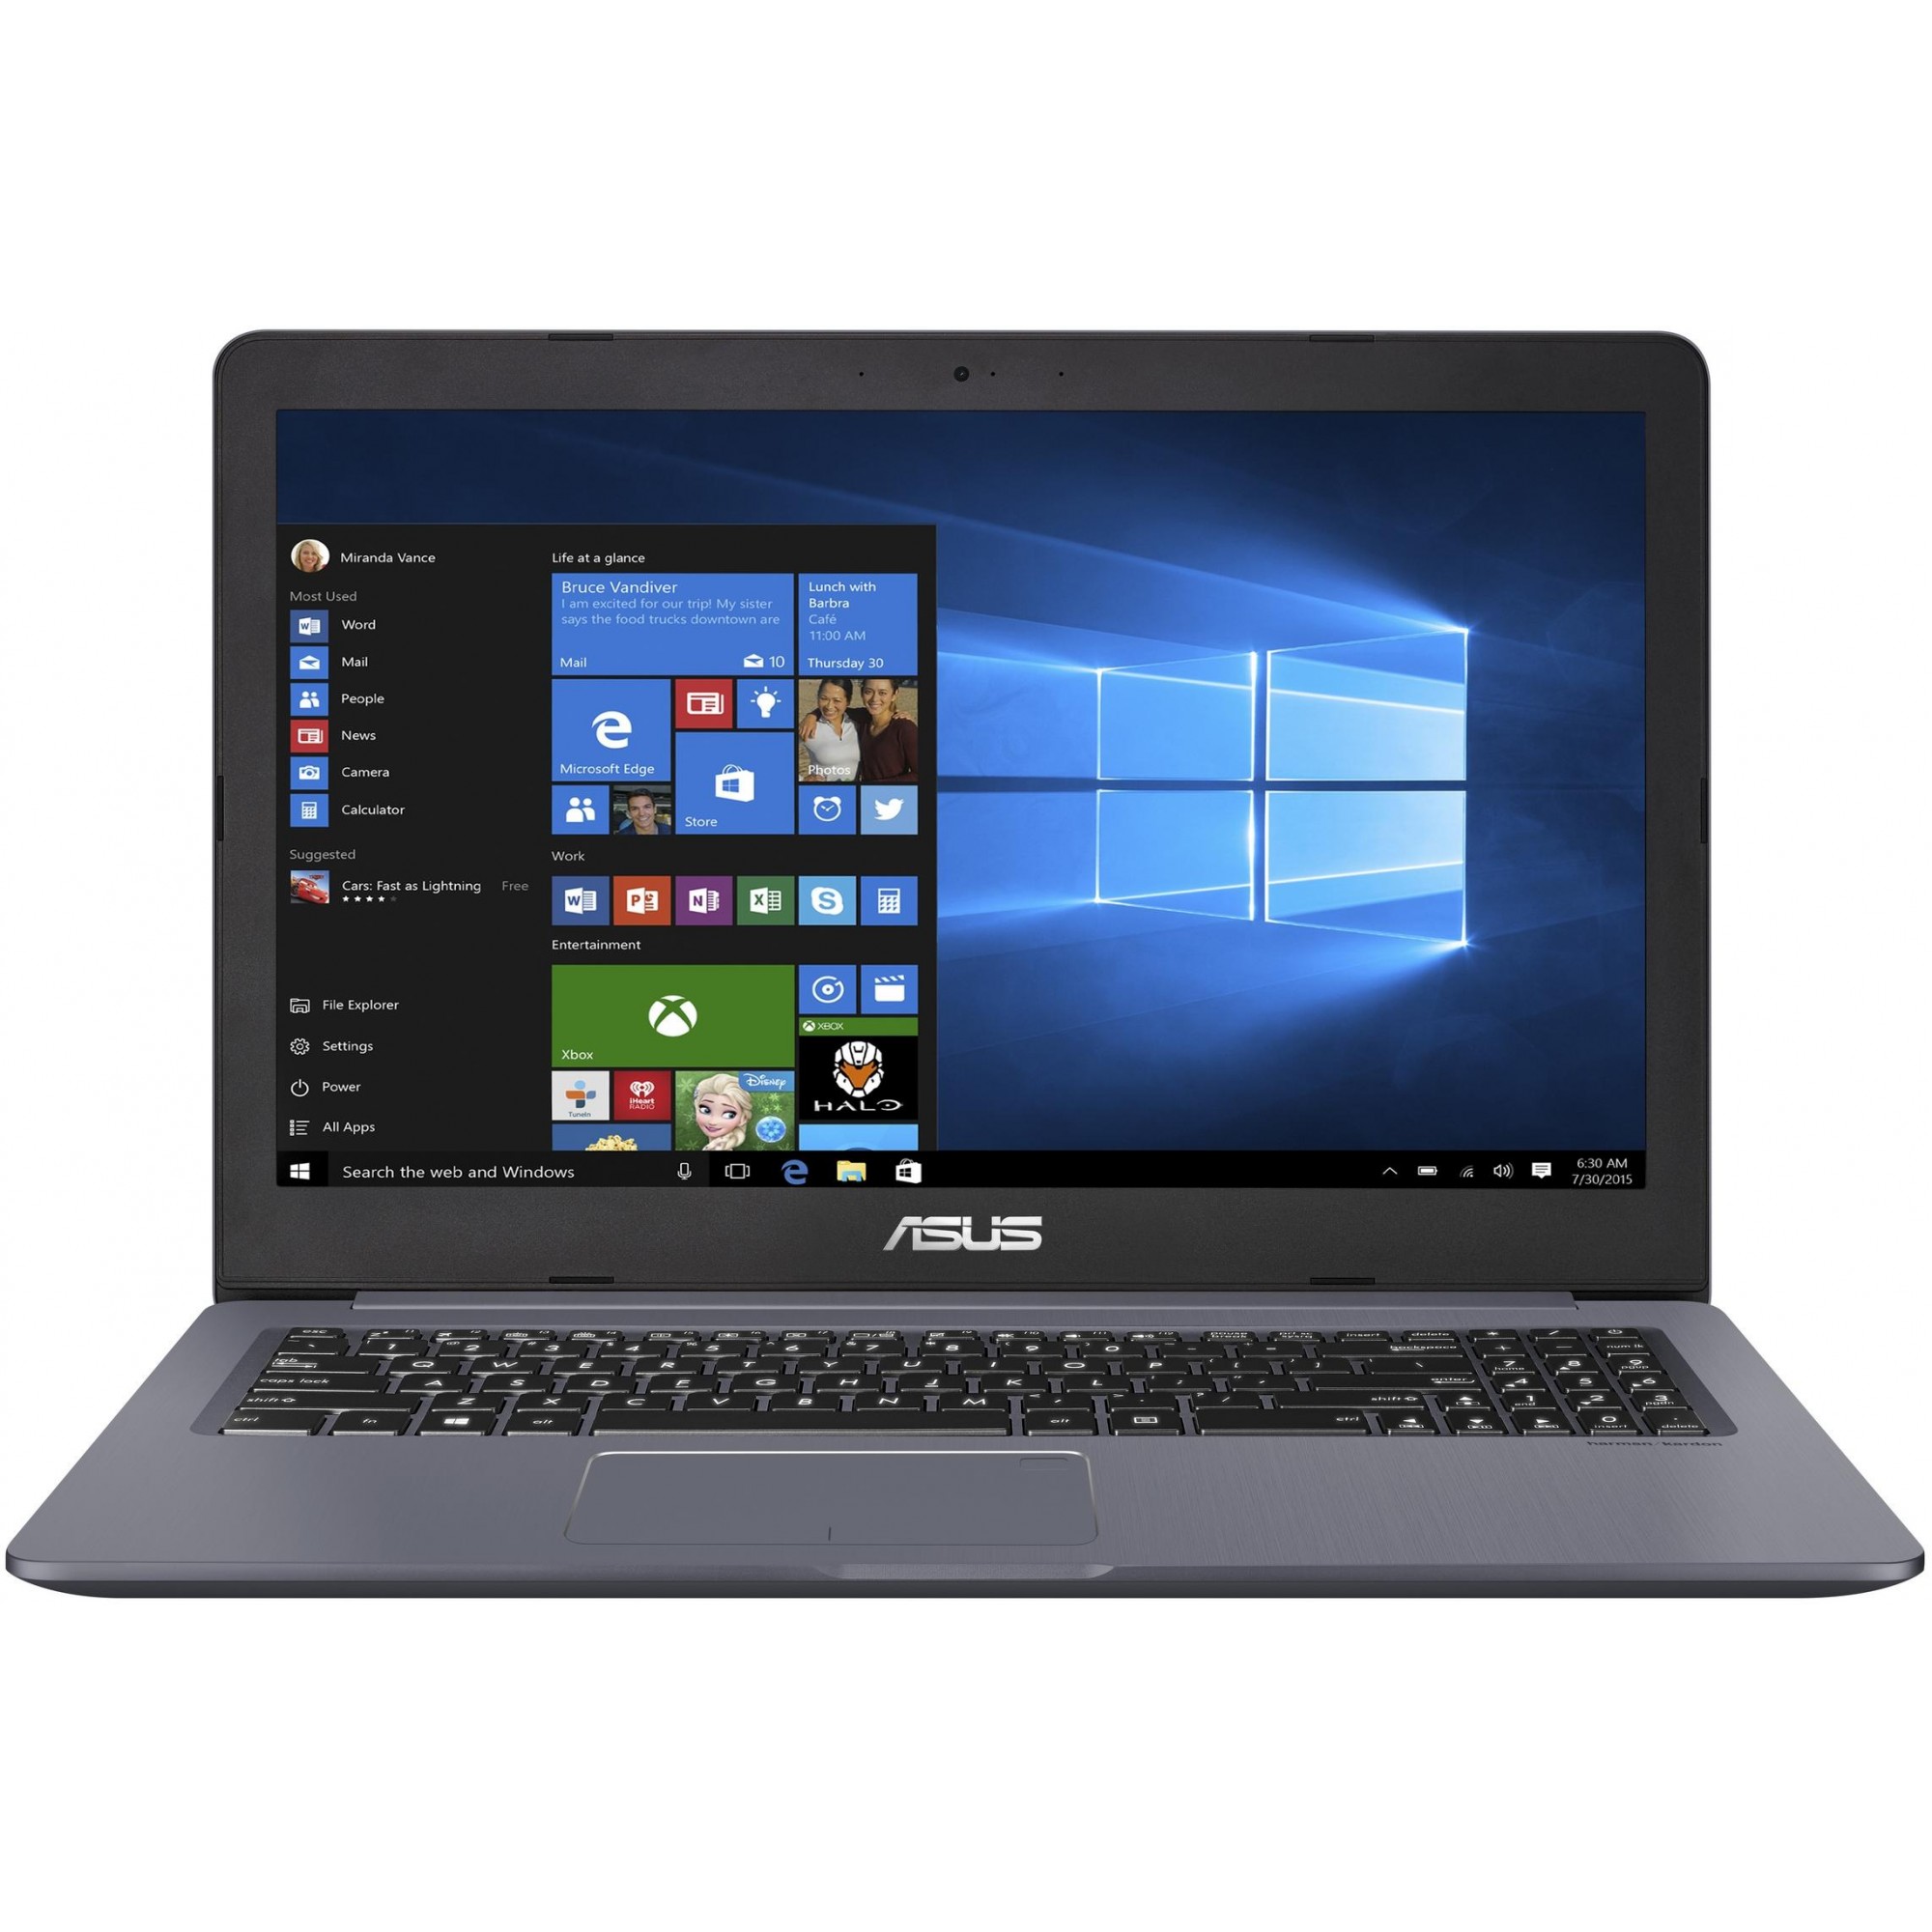 ASUS VivoBook Pro 15 N580VD - зображення 1